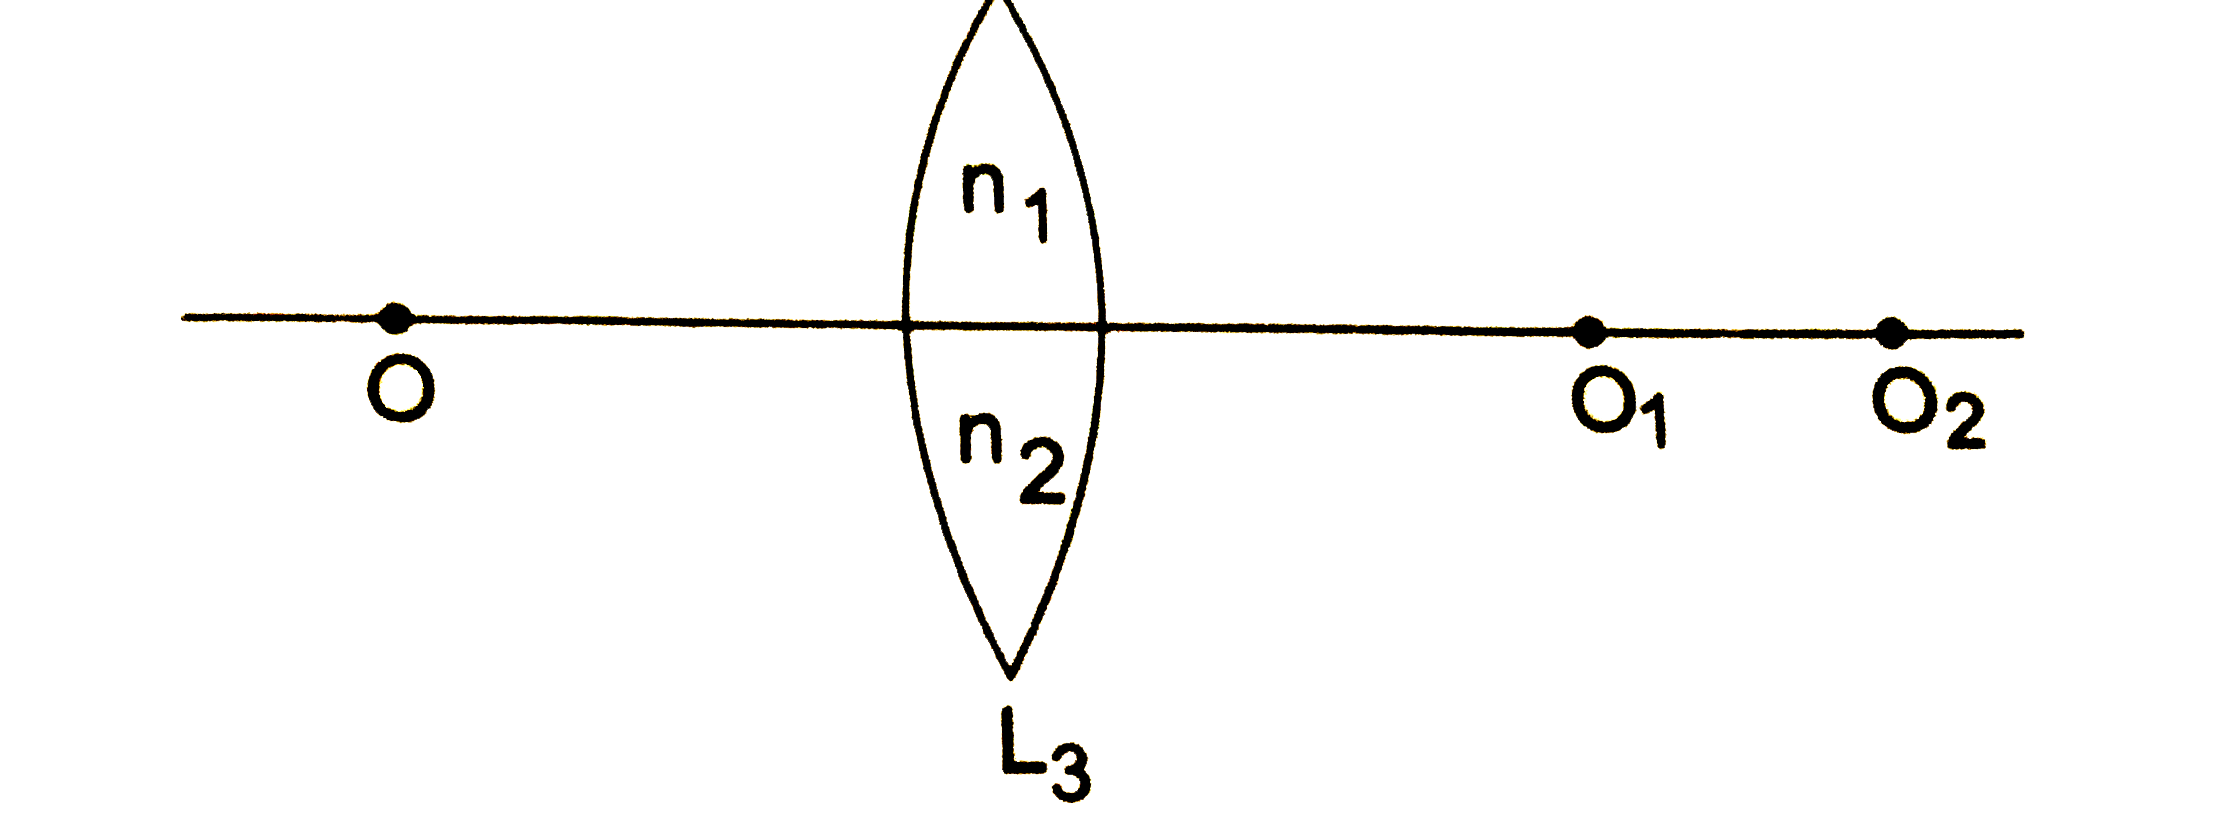 तीन उत्तल लेंस L(1), L(2) तथा L(3) एक ही ज्यामितीय आकार के बने हैं । L(1) के पदार्थ का अपवर्तनांक n(1)  तथा L(2) के पदार्थ का अपवर्तनांक n(2) हैं । लेंस L(3) के ऊपरी आधे हिस्से का अपवर्तनांक n(1)  हैं जबकि निचले आधे हिस्से का अपवर्तनांक n(2)हैं । चित्र में दिखाए गए स्थान पर यदि लेंस L(1) को रखा जाता हैं , तो बिंदु O का प्रतिबिंब O(1) पर बनता हैं । यदि यहीं पर लेंस L(2) को लाया जाता हैं , तो उसका प्रतिबिंब O(2) पर बनता हैं । यदि यहाँ L(3) को ले आया जाए , तो